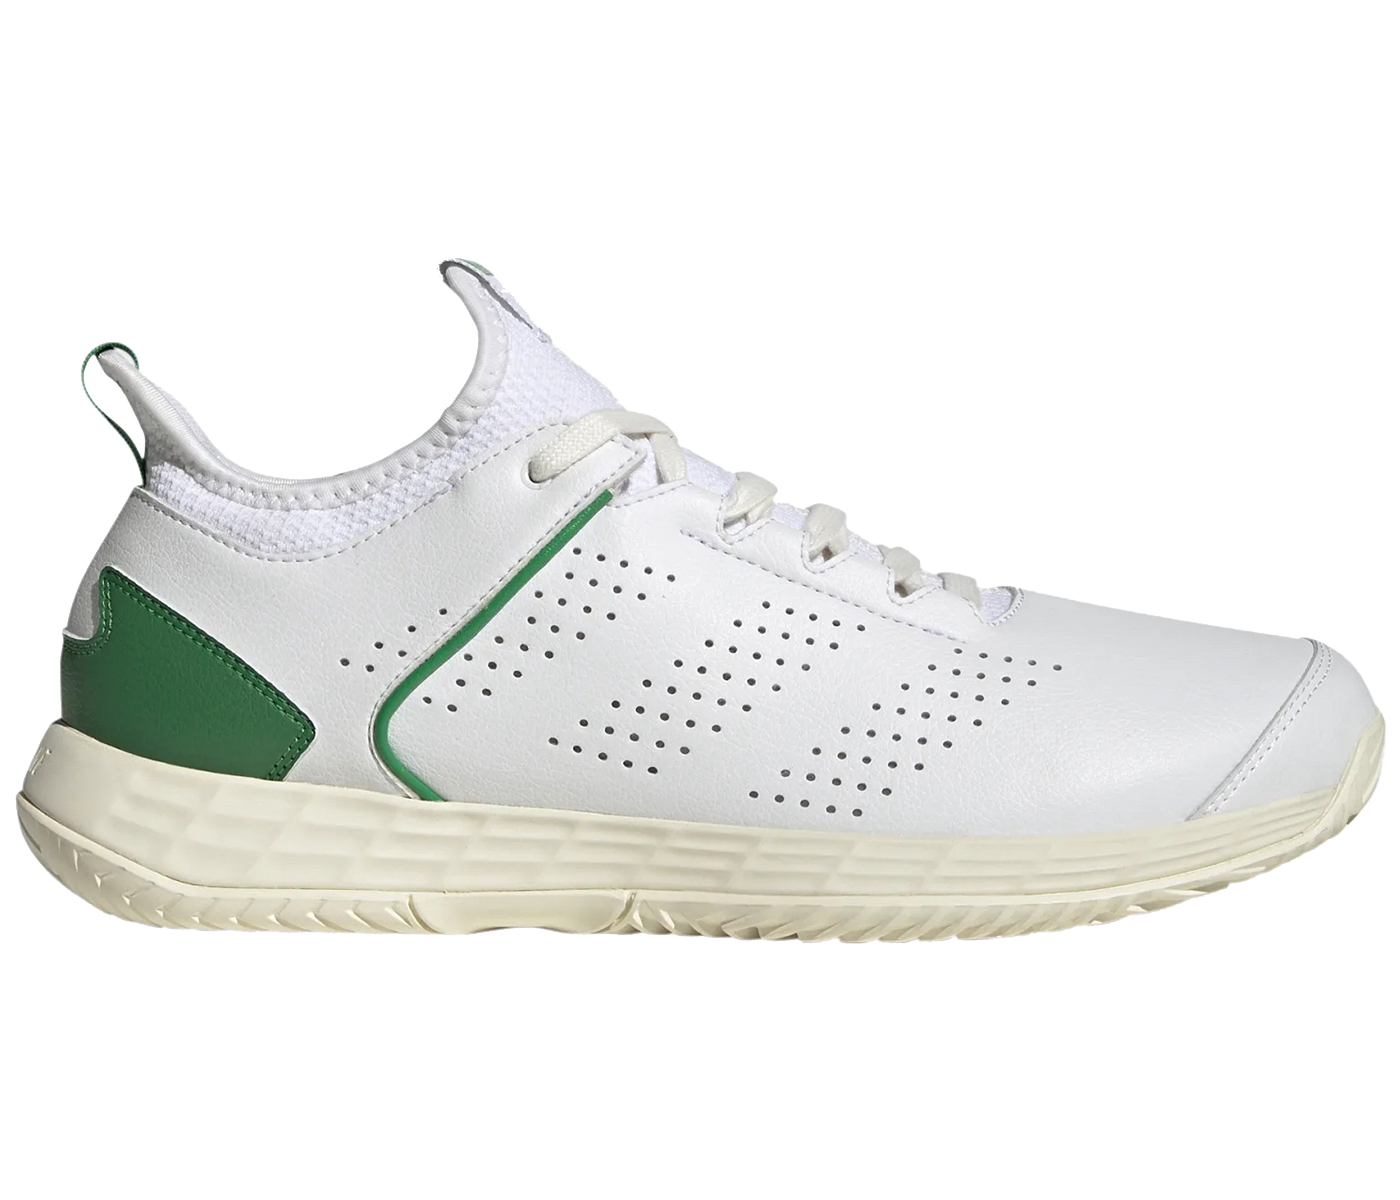 adidas Adizero Ubersonic 4 Stanniversary White Green